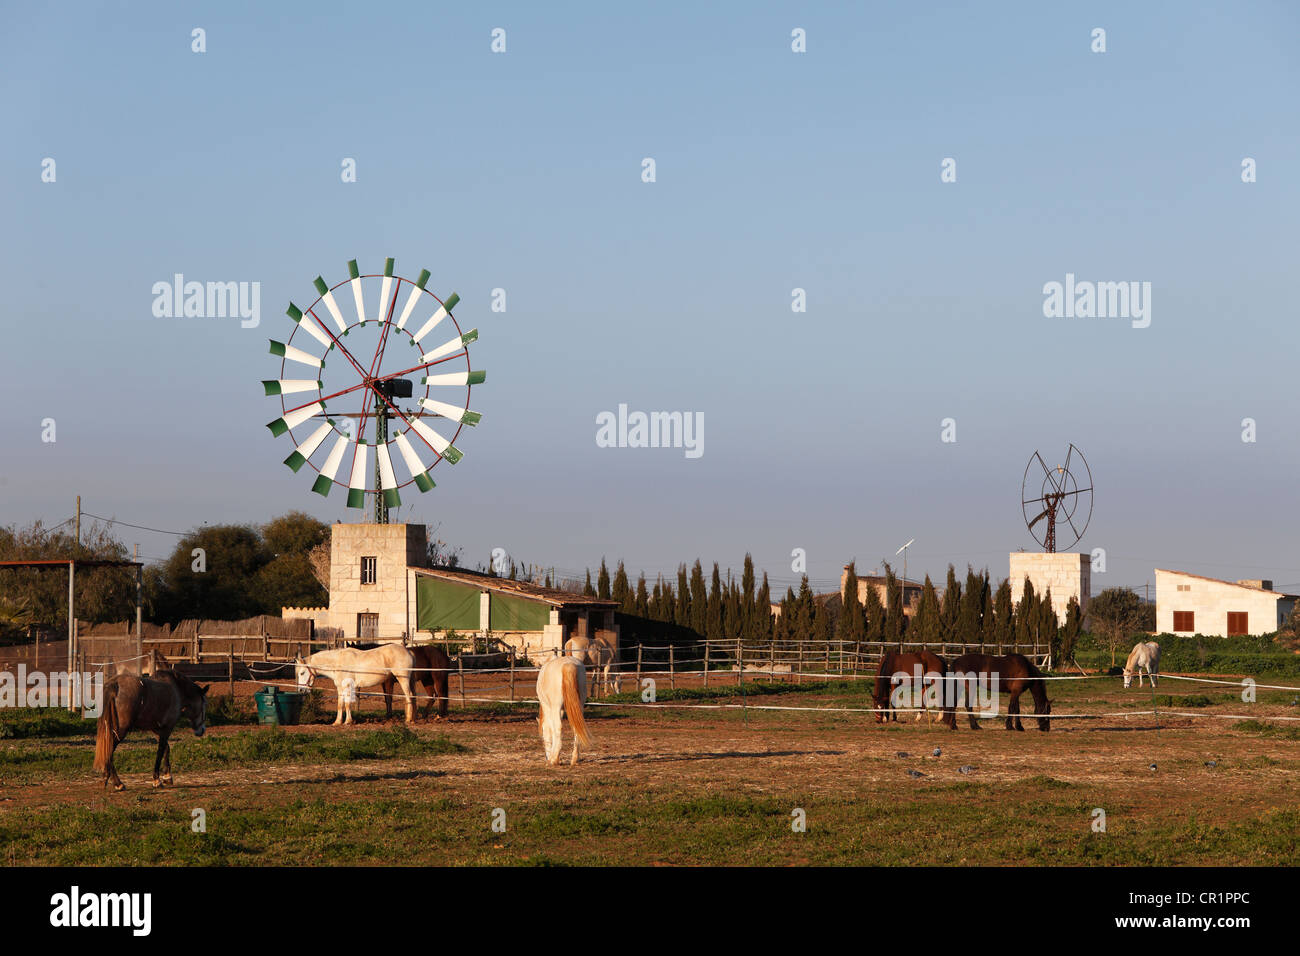 Windmühle und Pferde, Campos, Mallorca, Balearen, Spanien, Europa Stockfoto